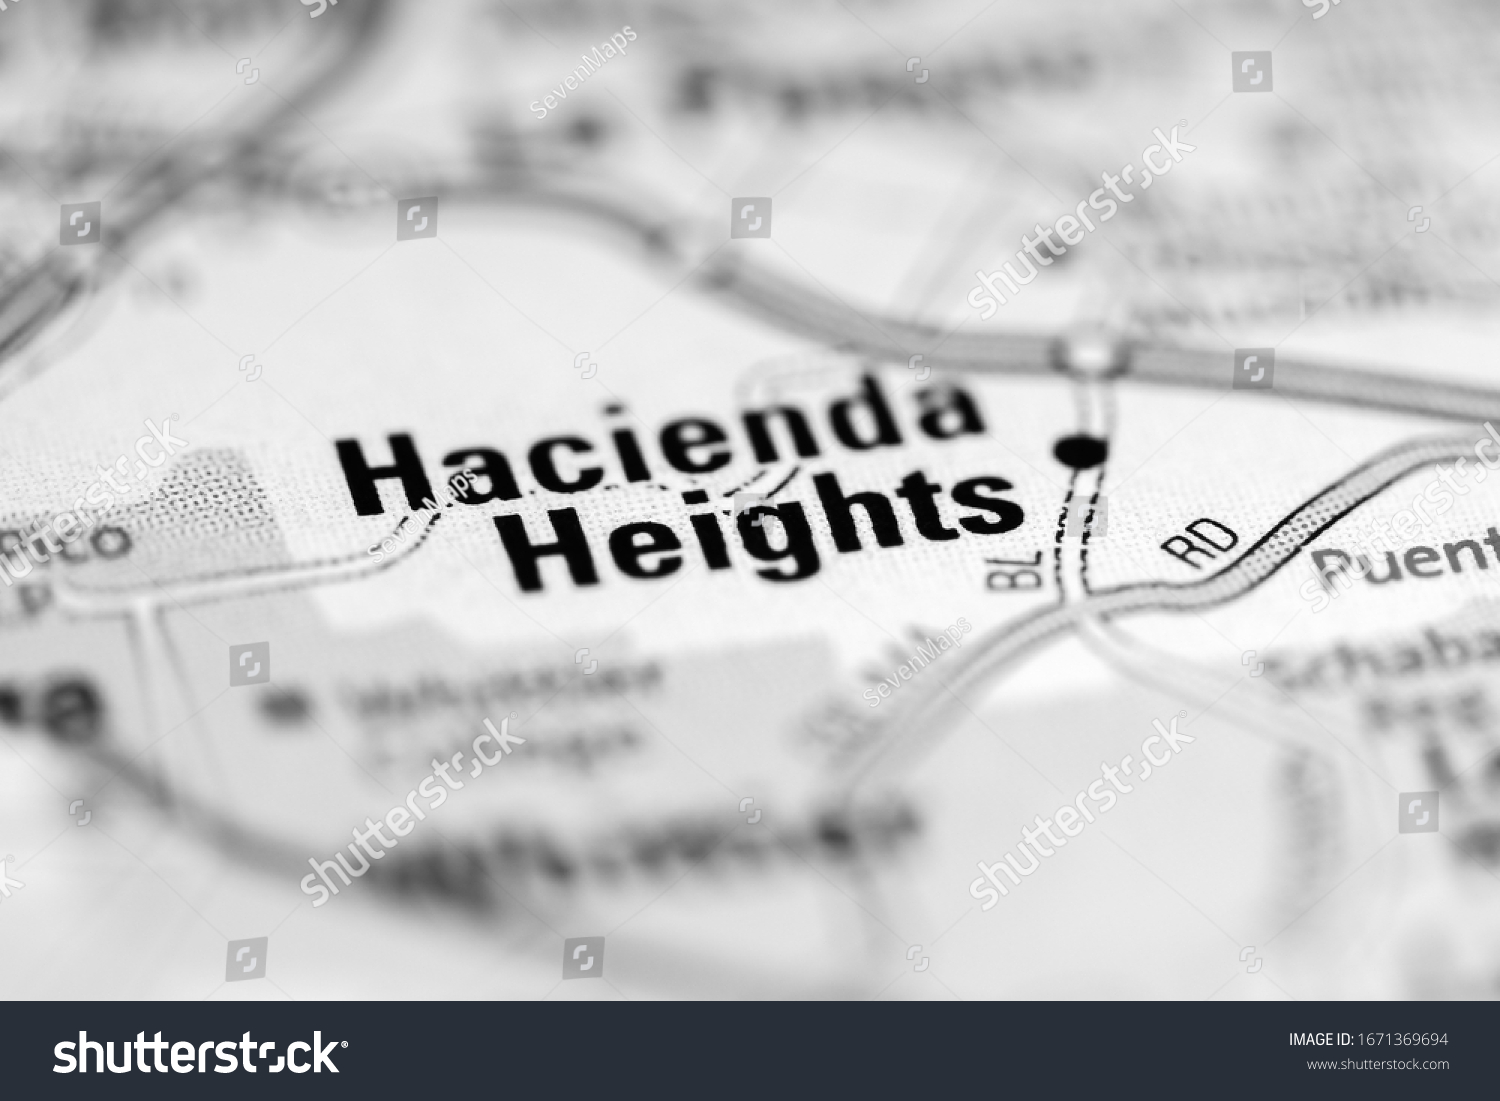 Hacienda Heights Map Images Stock Photos Vectors Shutterstock